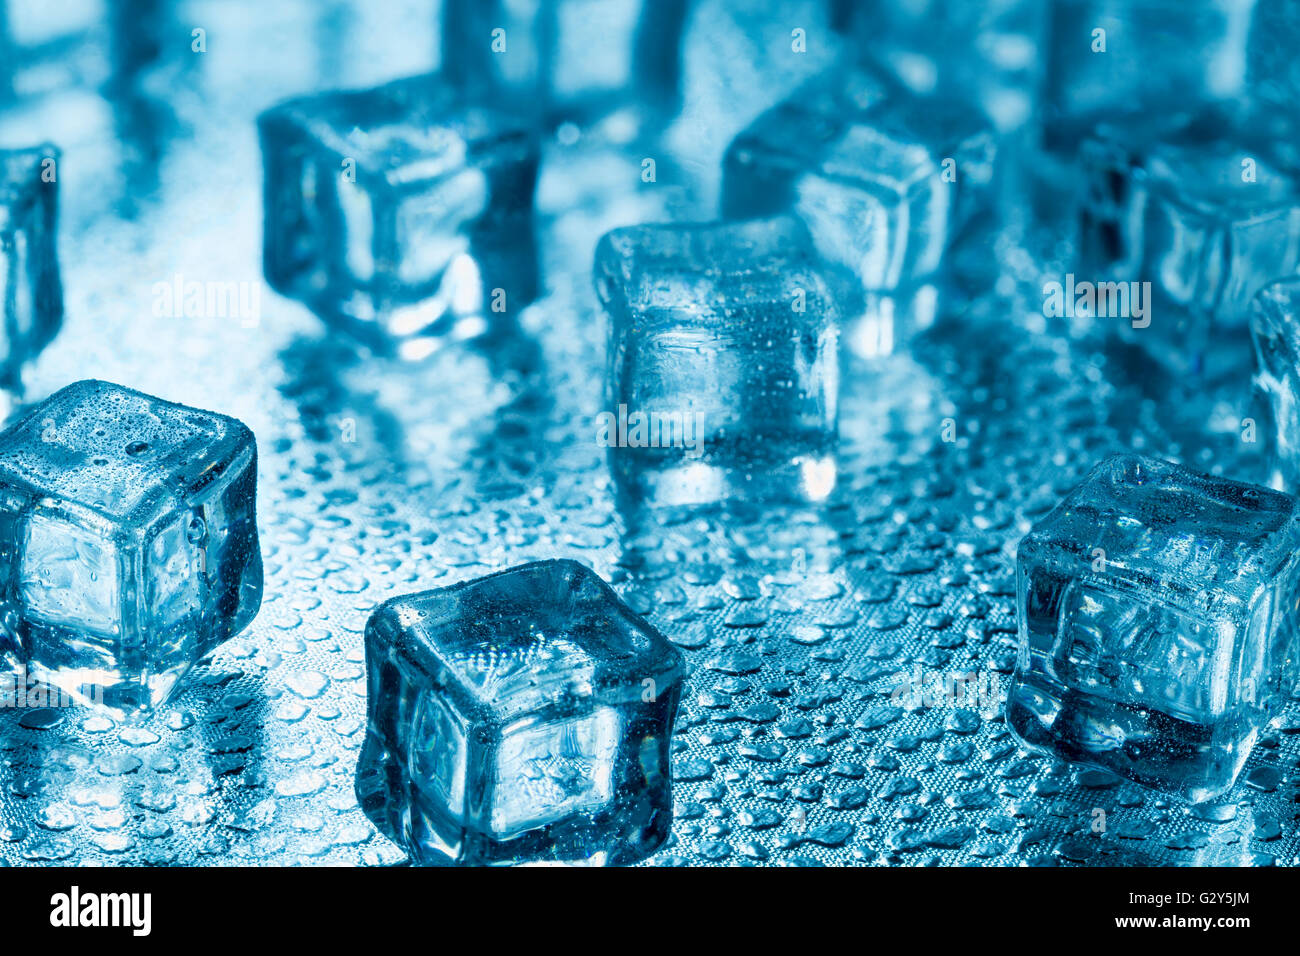 Many blue melting ice cubes on glass Stock Photo